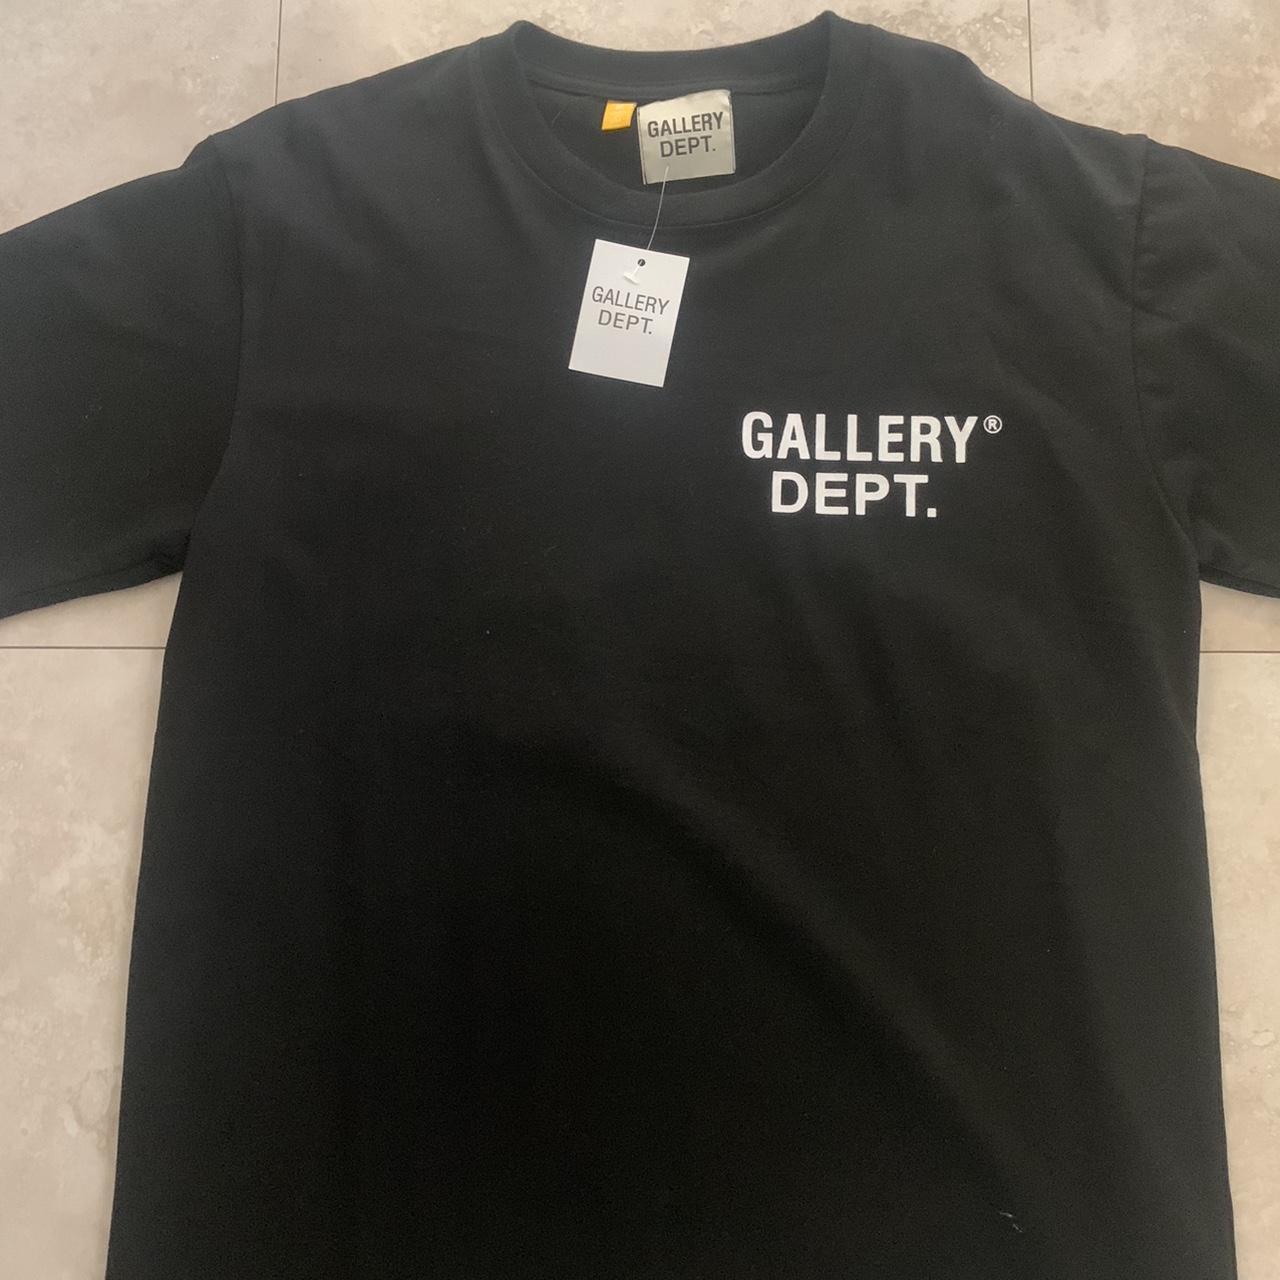 Gallery Dept. Logo Print Cotton-Jersey T-shirt Size... - Depop